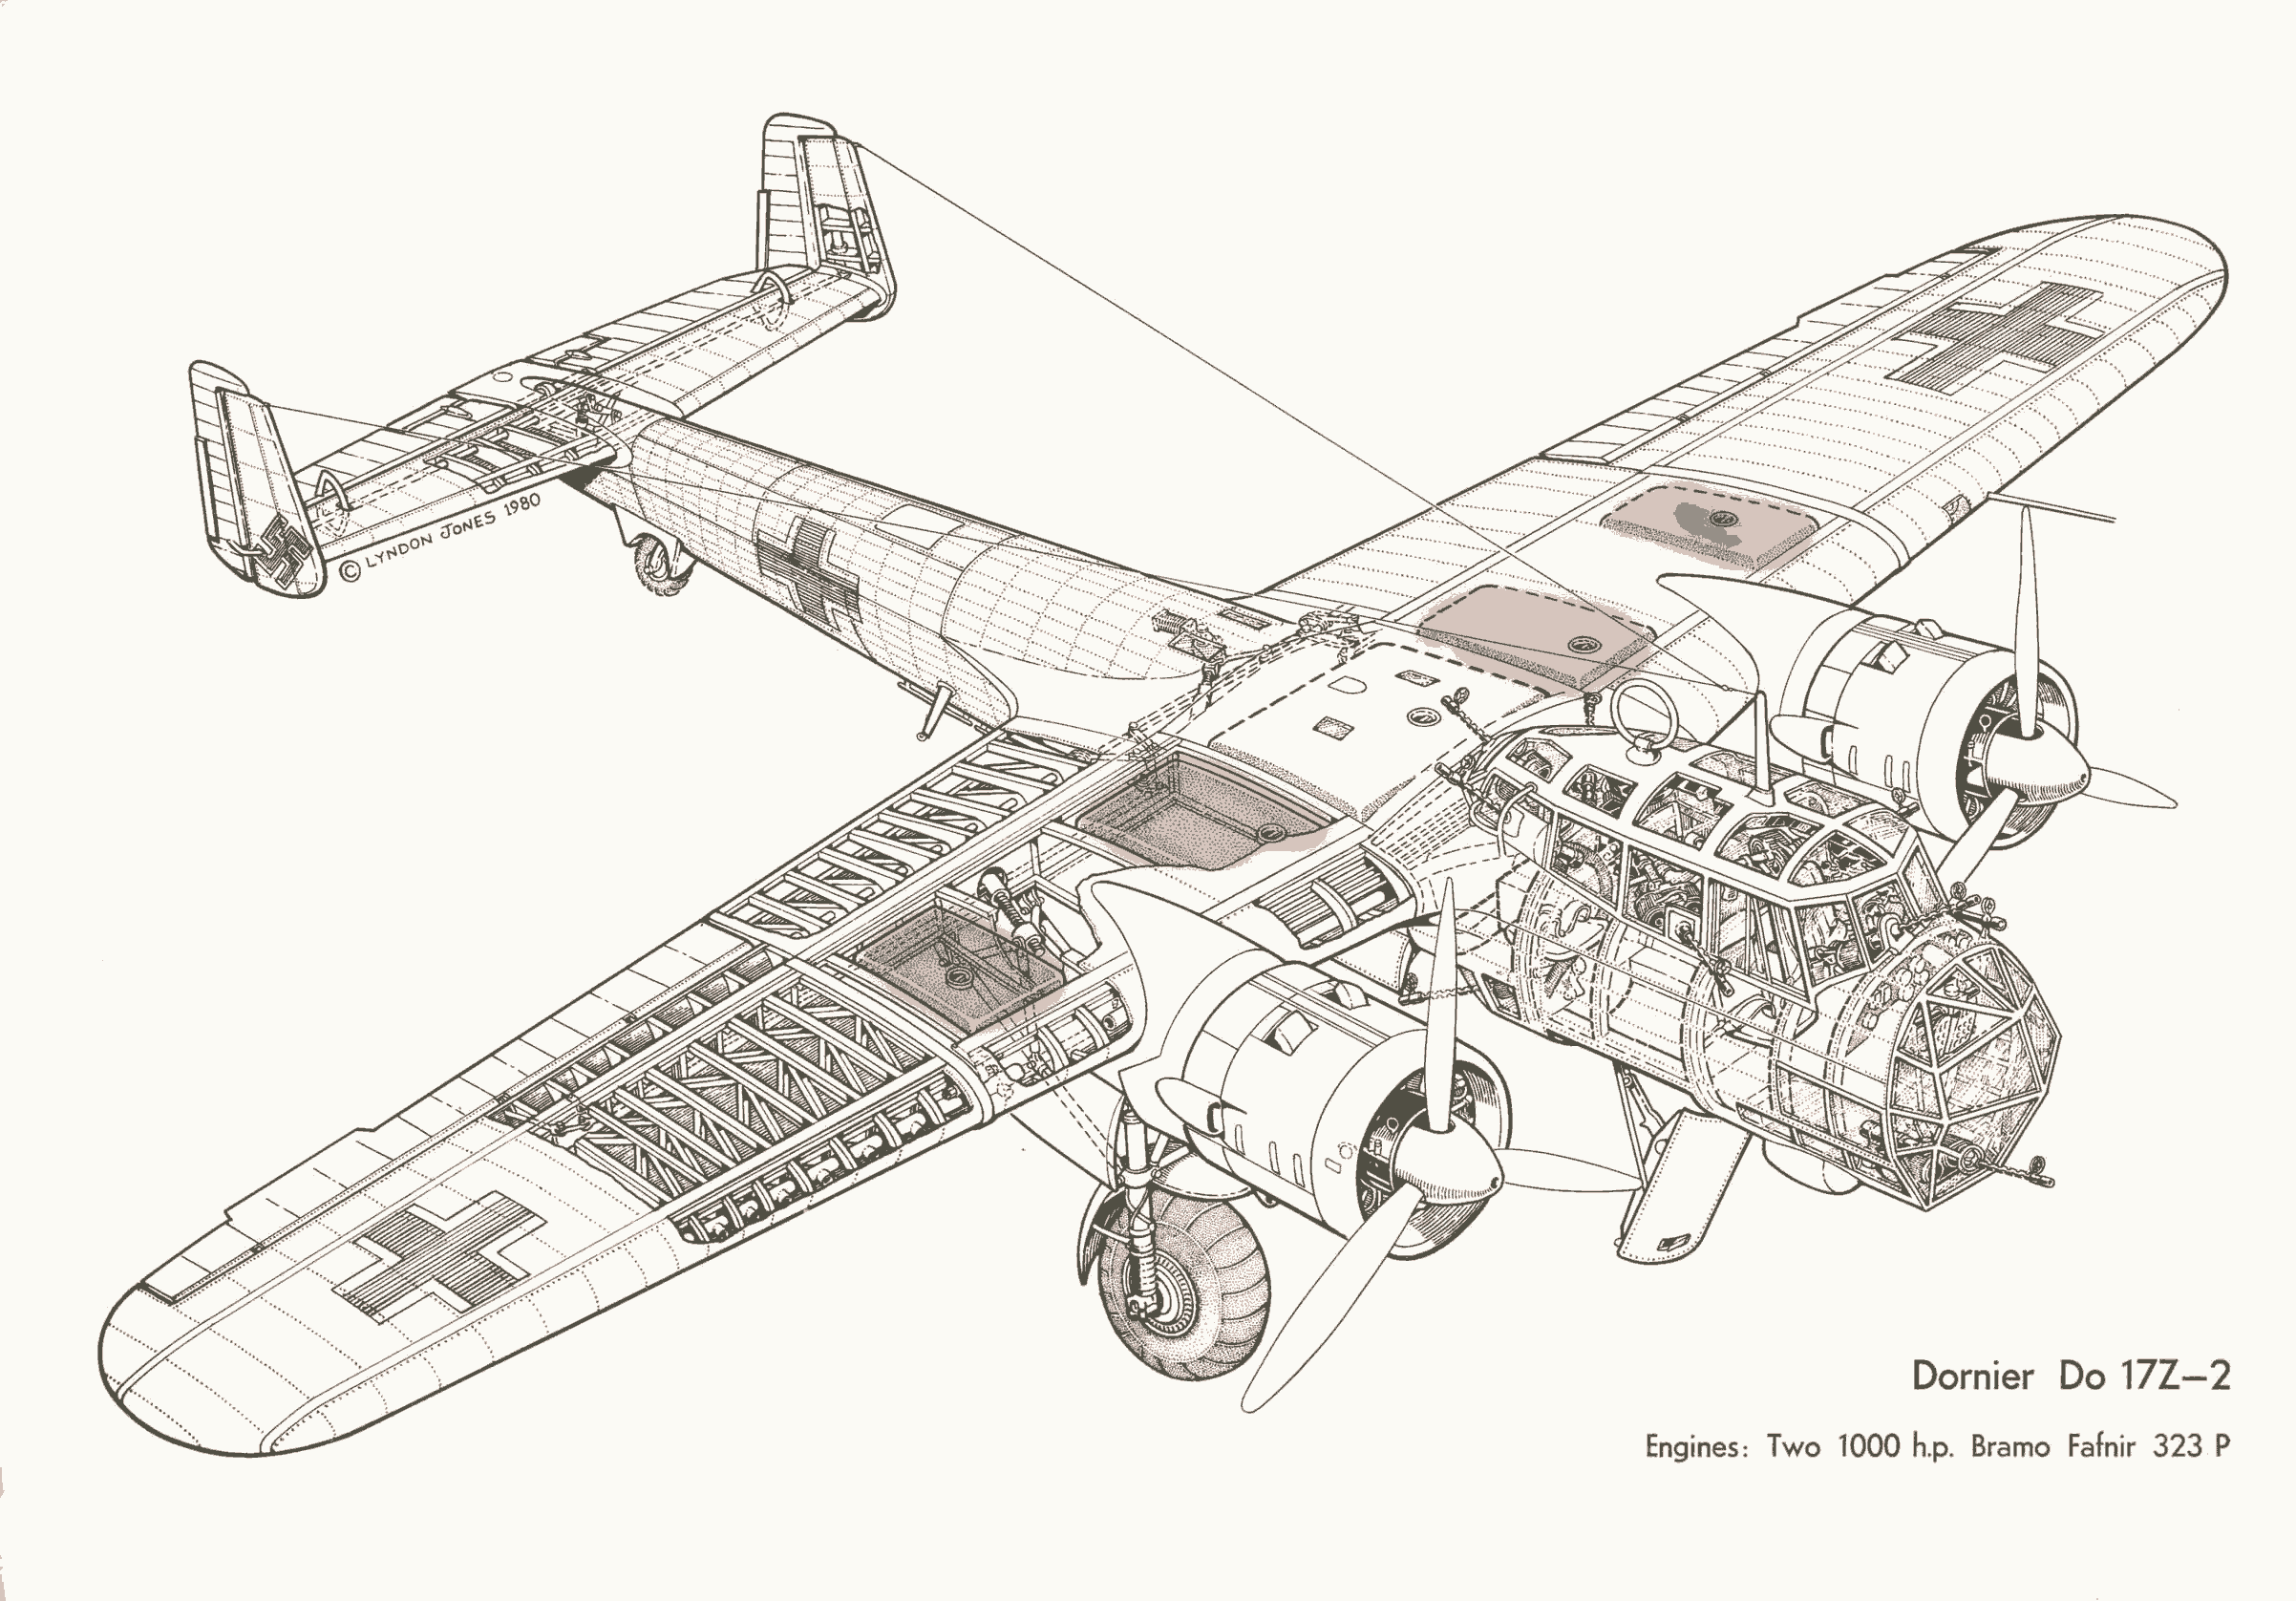 Dornier Do 17 cutaway